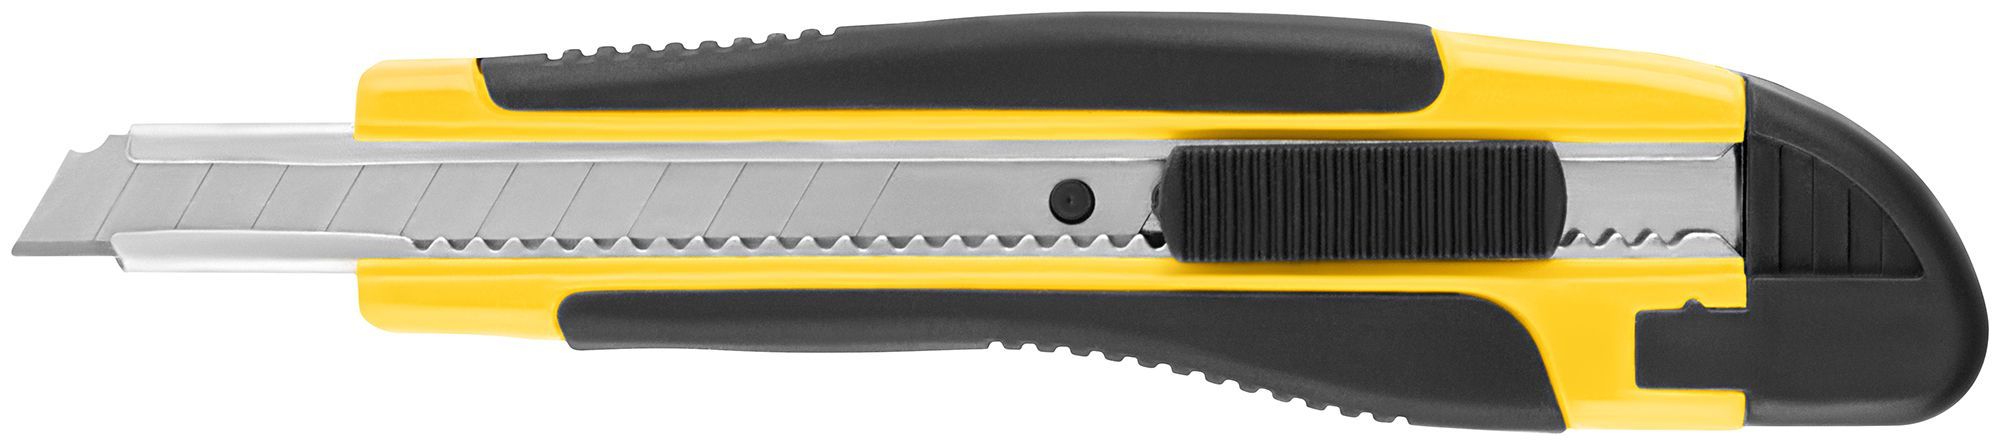 нож технический  10212